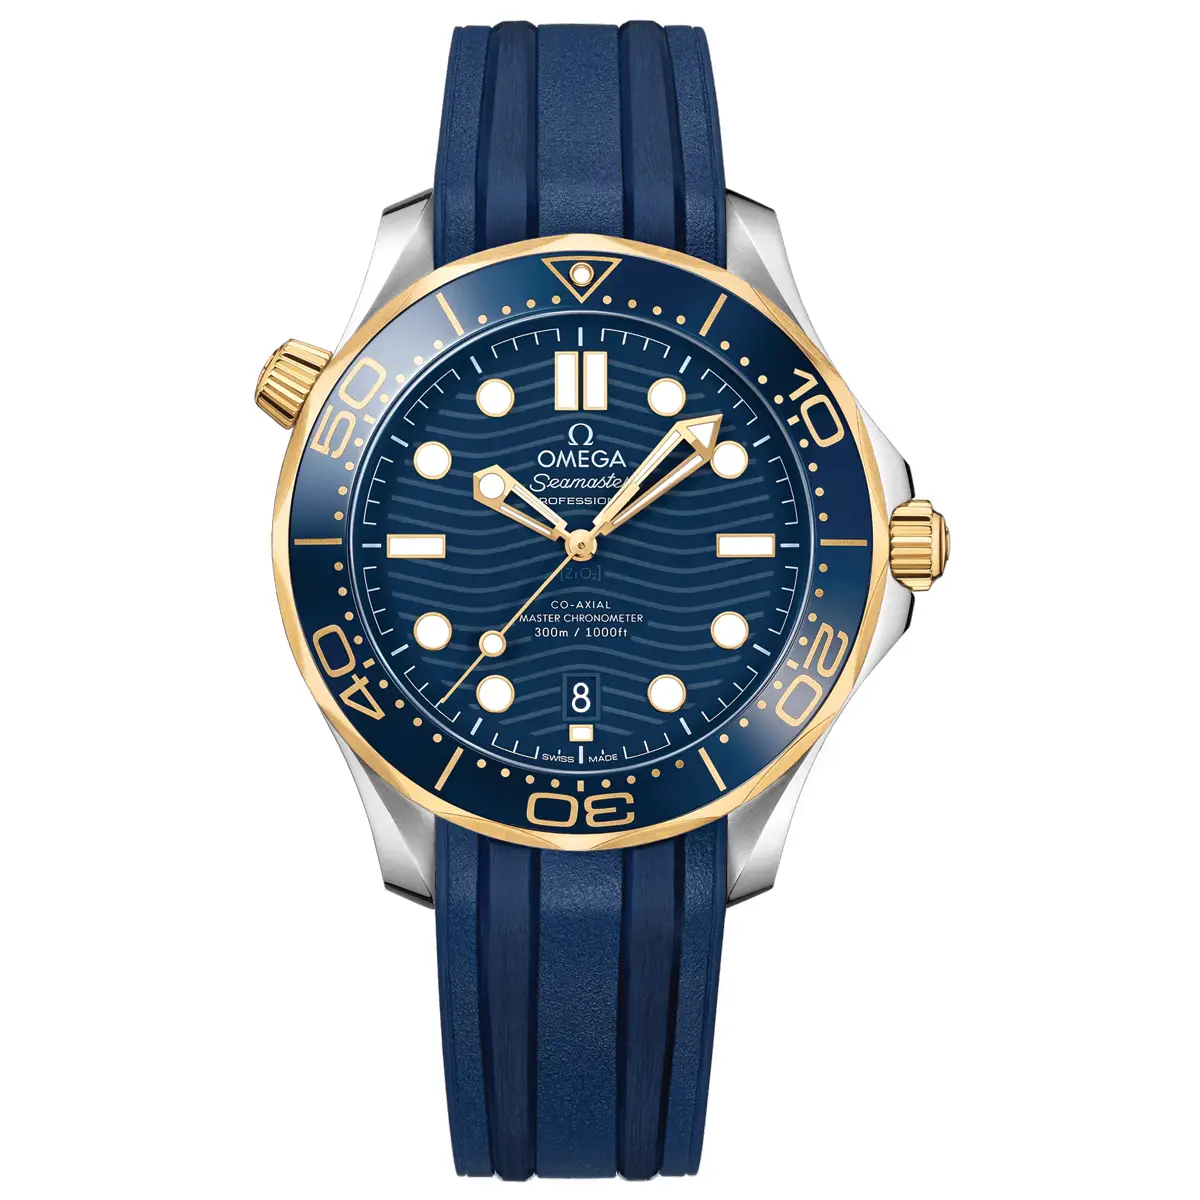 Đồng hồ Omega Seamaster Diver Master Chronometer 210.22.42.20.03.001 mặt số màu xanh. Dây đeo bằng cao su. Thân vỏ bằng thép.